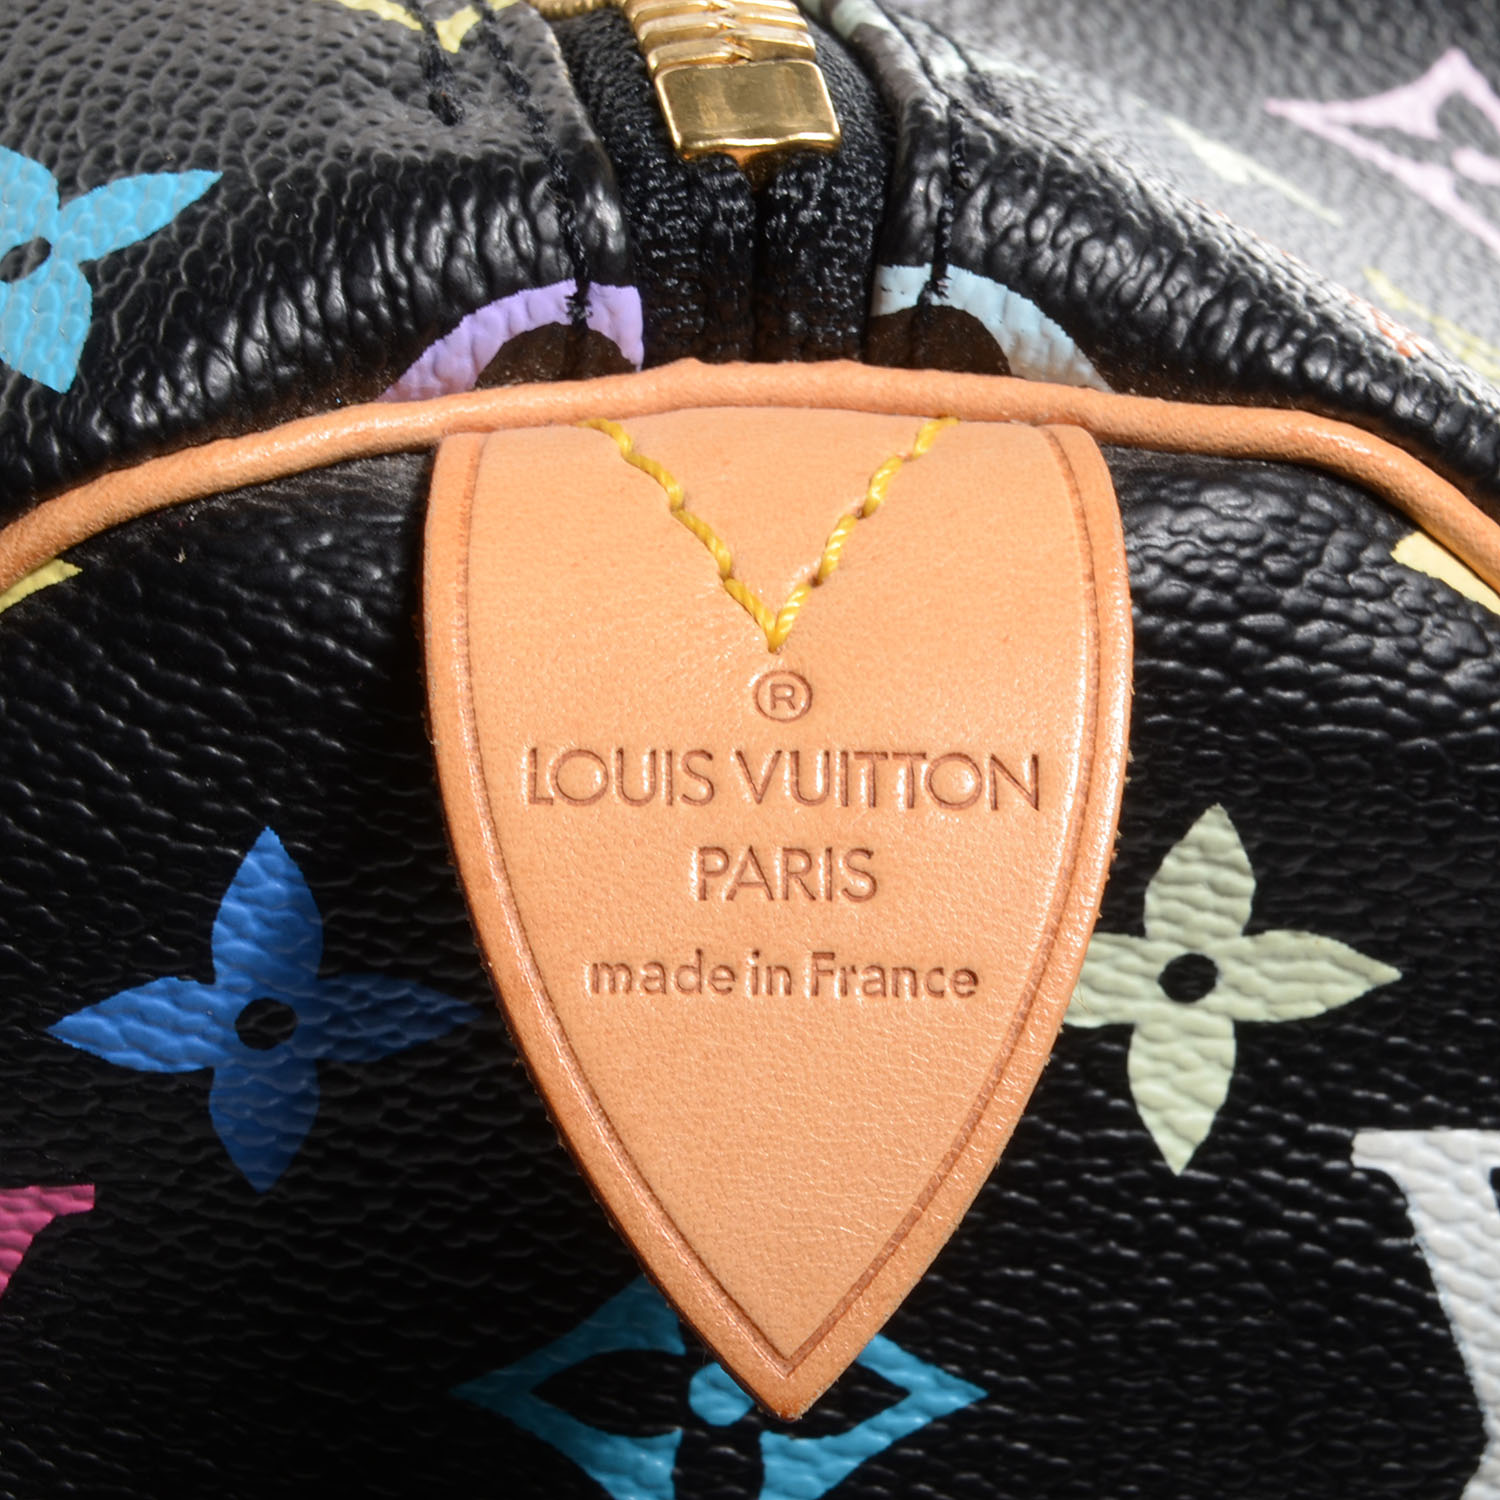 Louis Vuitton Keepall 45 Vs 50 Size Comparison Ft. Monogram Macassar Canvas  + Limited Edition Prism 